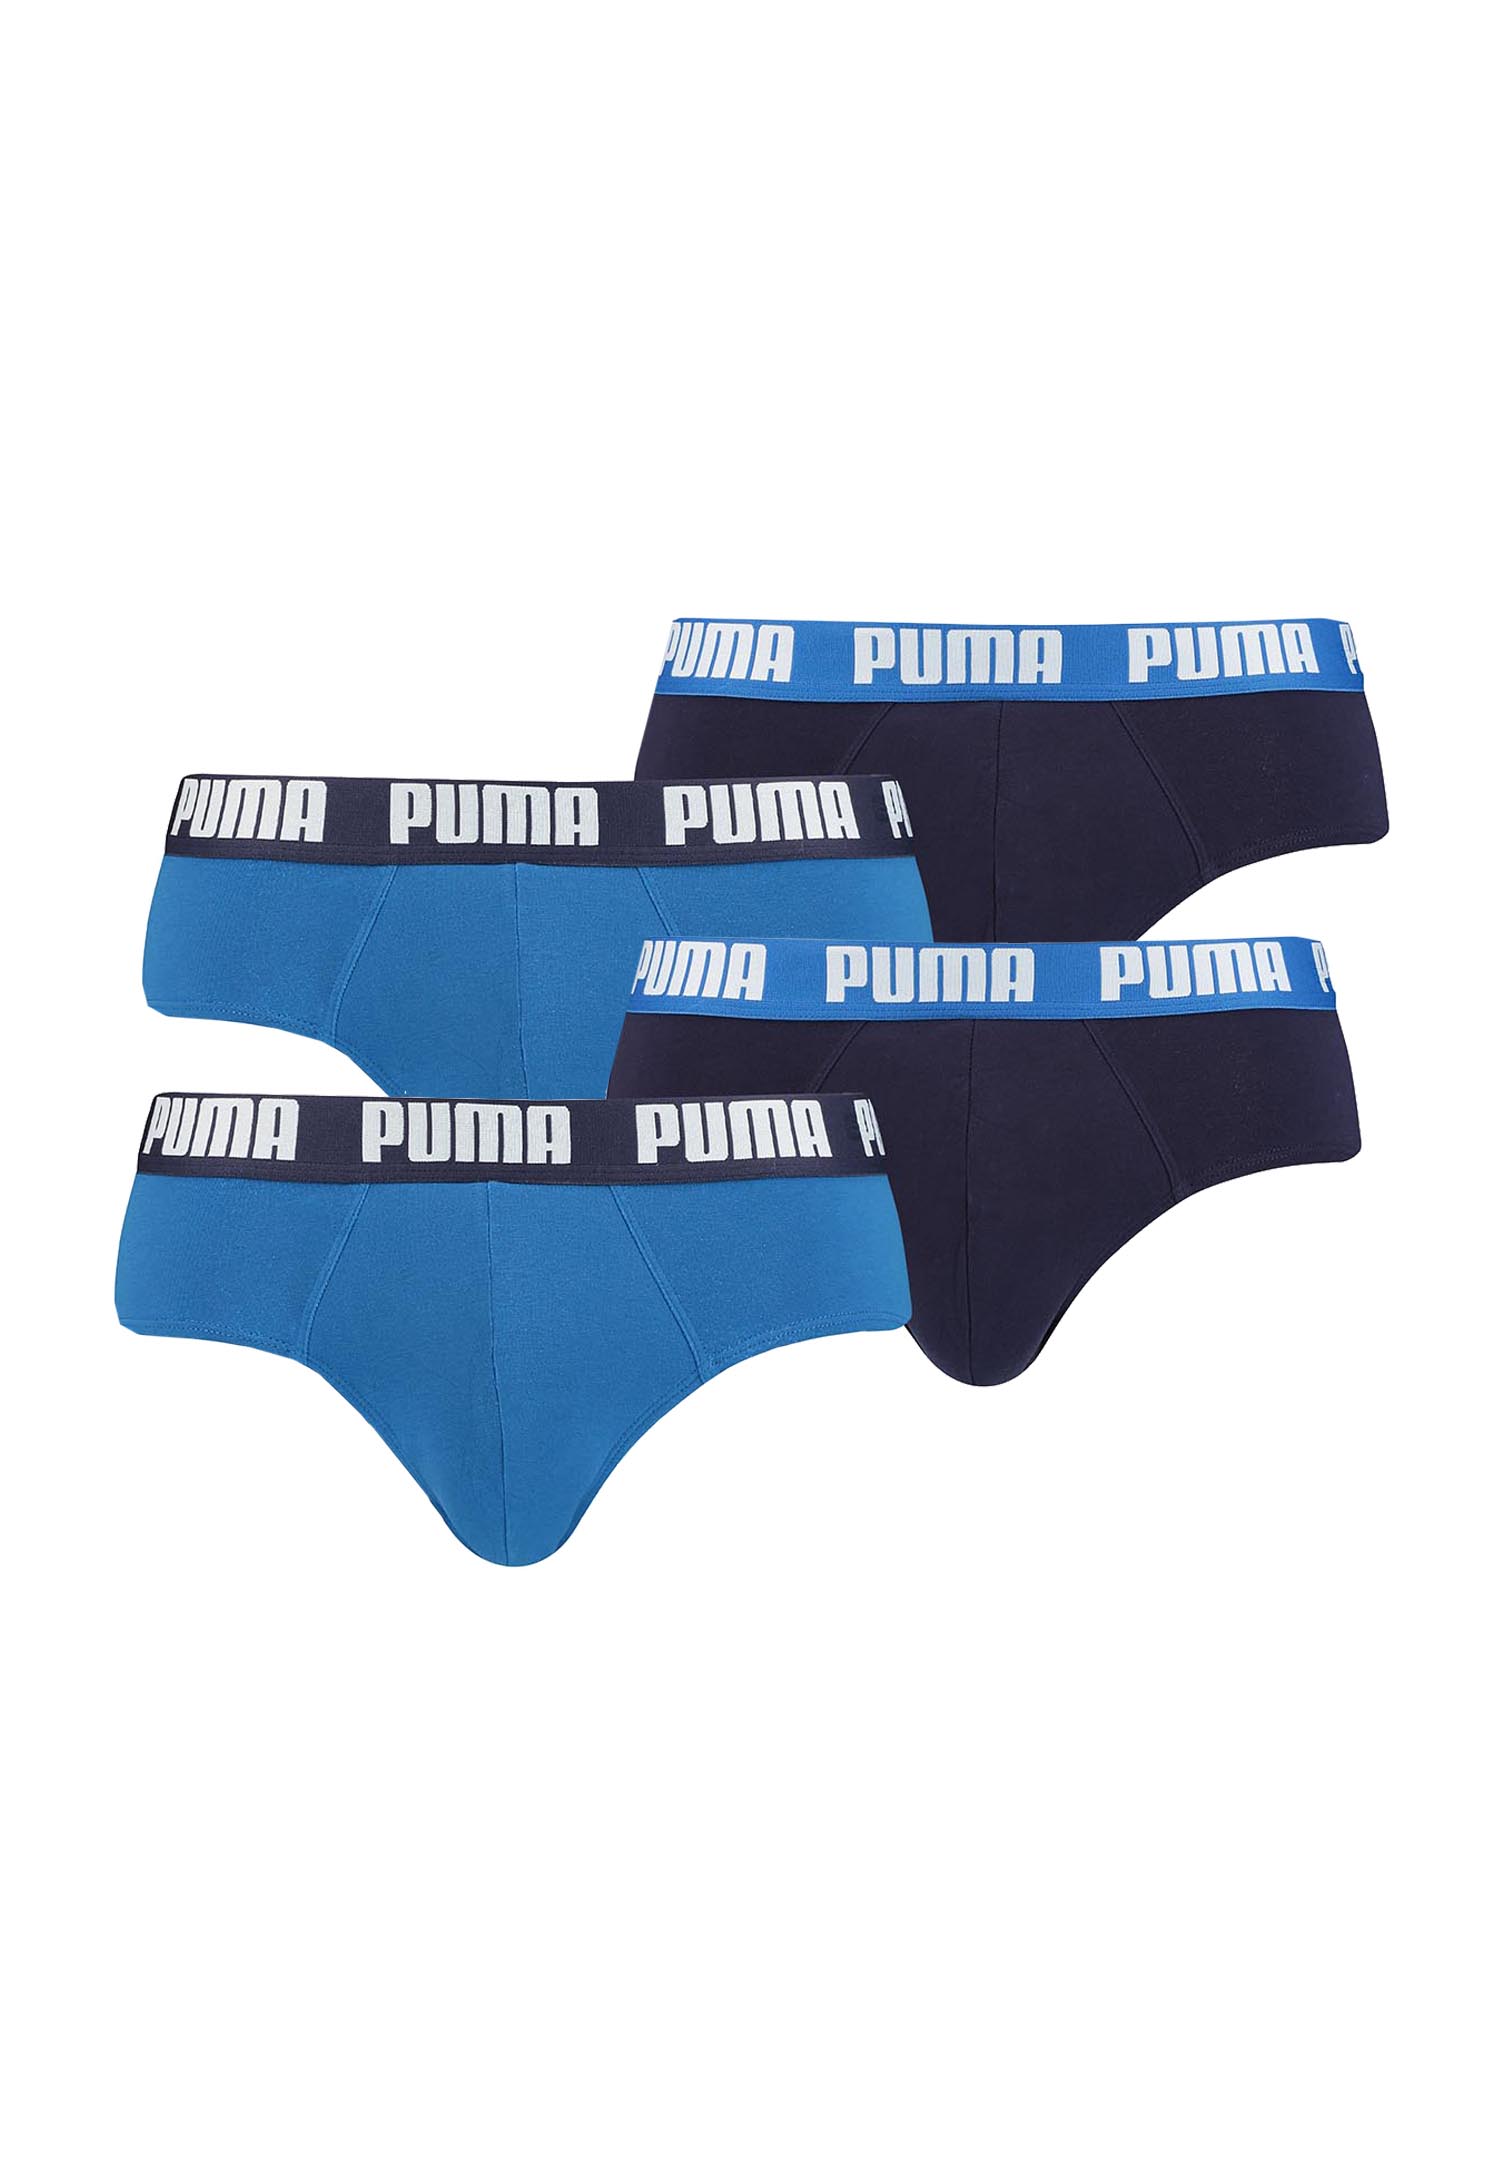 Puma Herren Slips Briefs Unterhosen ohme Eingriff verschiedene Farben 4er Pack (XL, true blue (420))